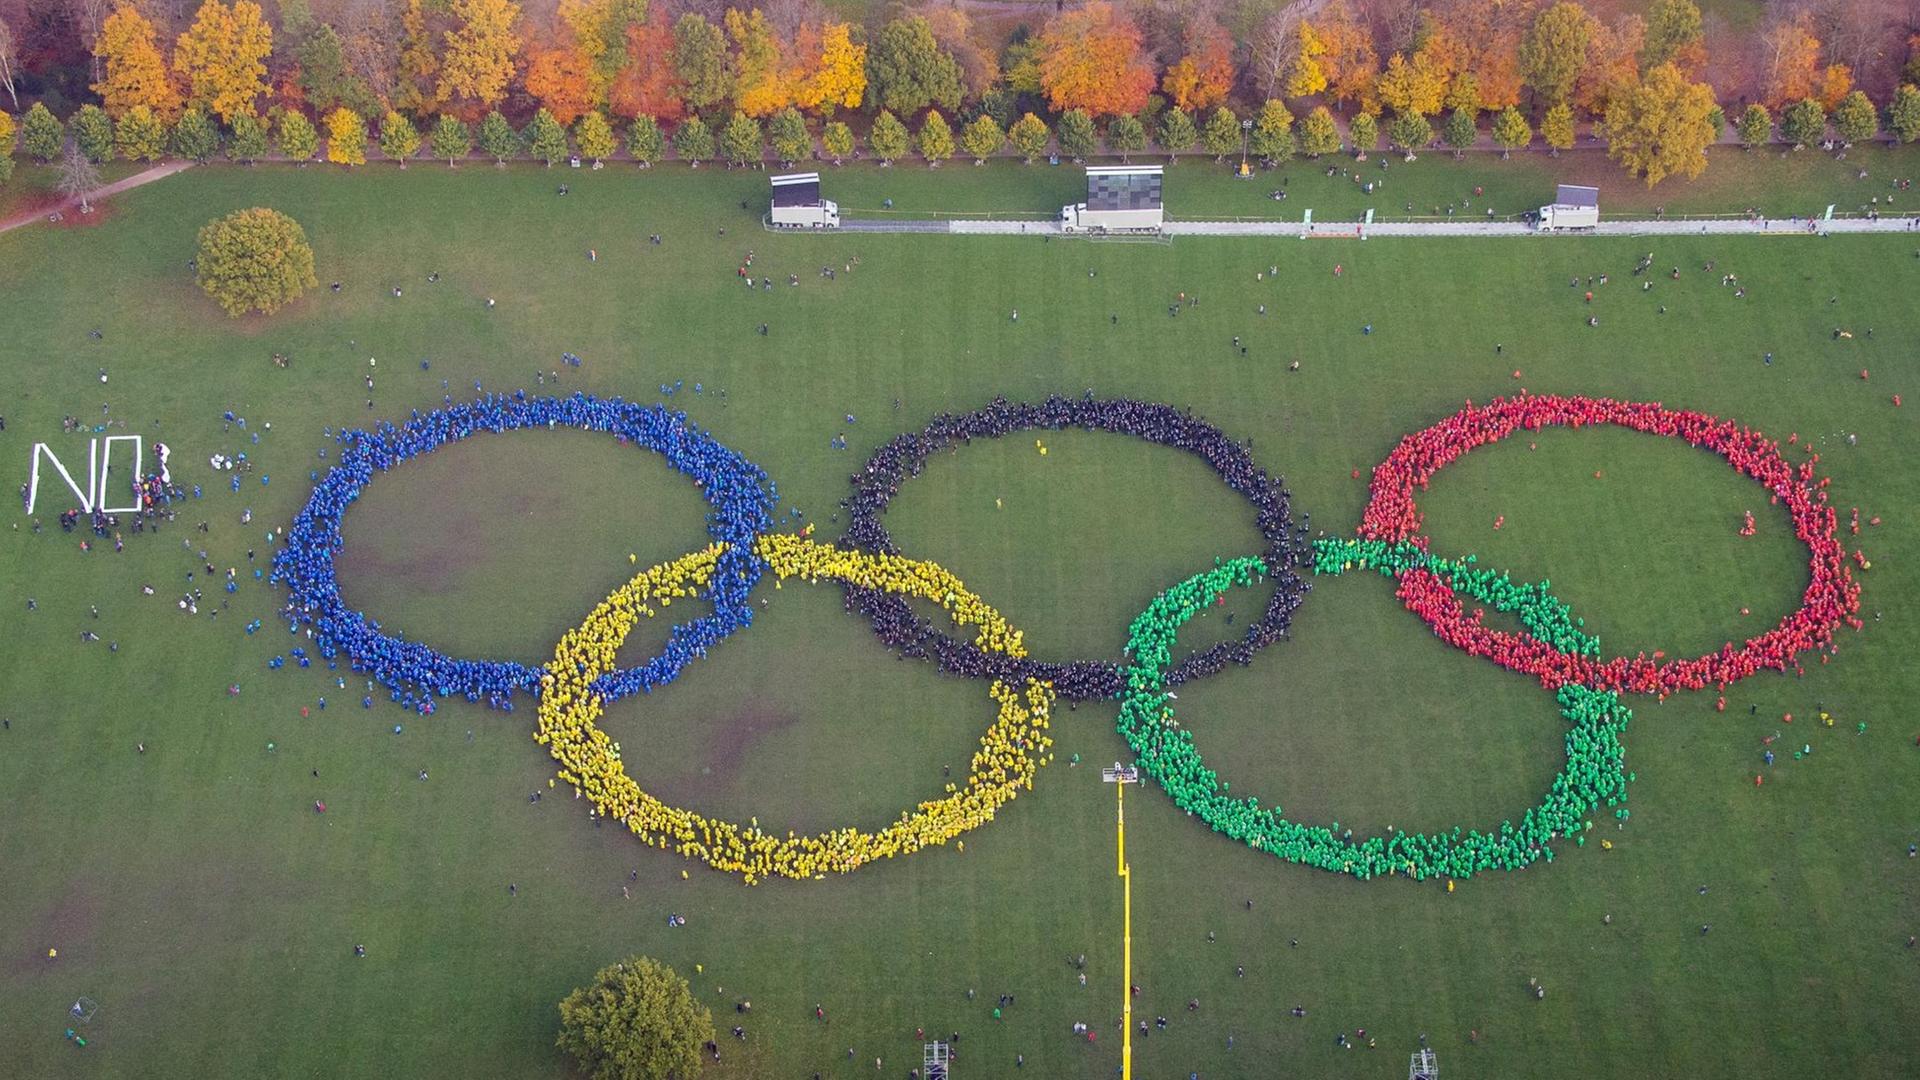 Hunderte Menschen in bunten Ponchos bilden im Stadtpark in Hamburg die Olympischen Ringe. Gegner haben davor das Wort "No" gebildet.